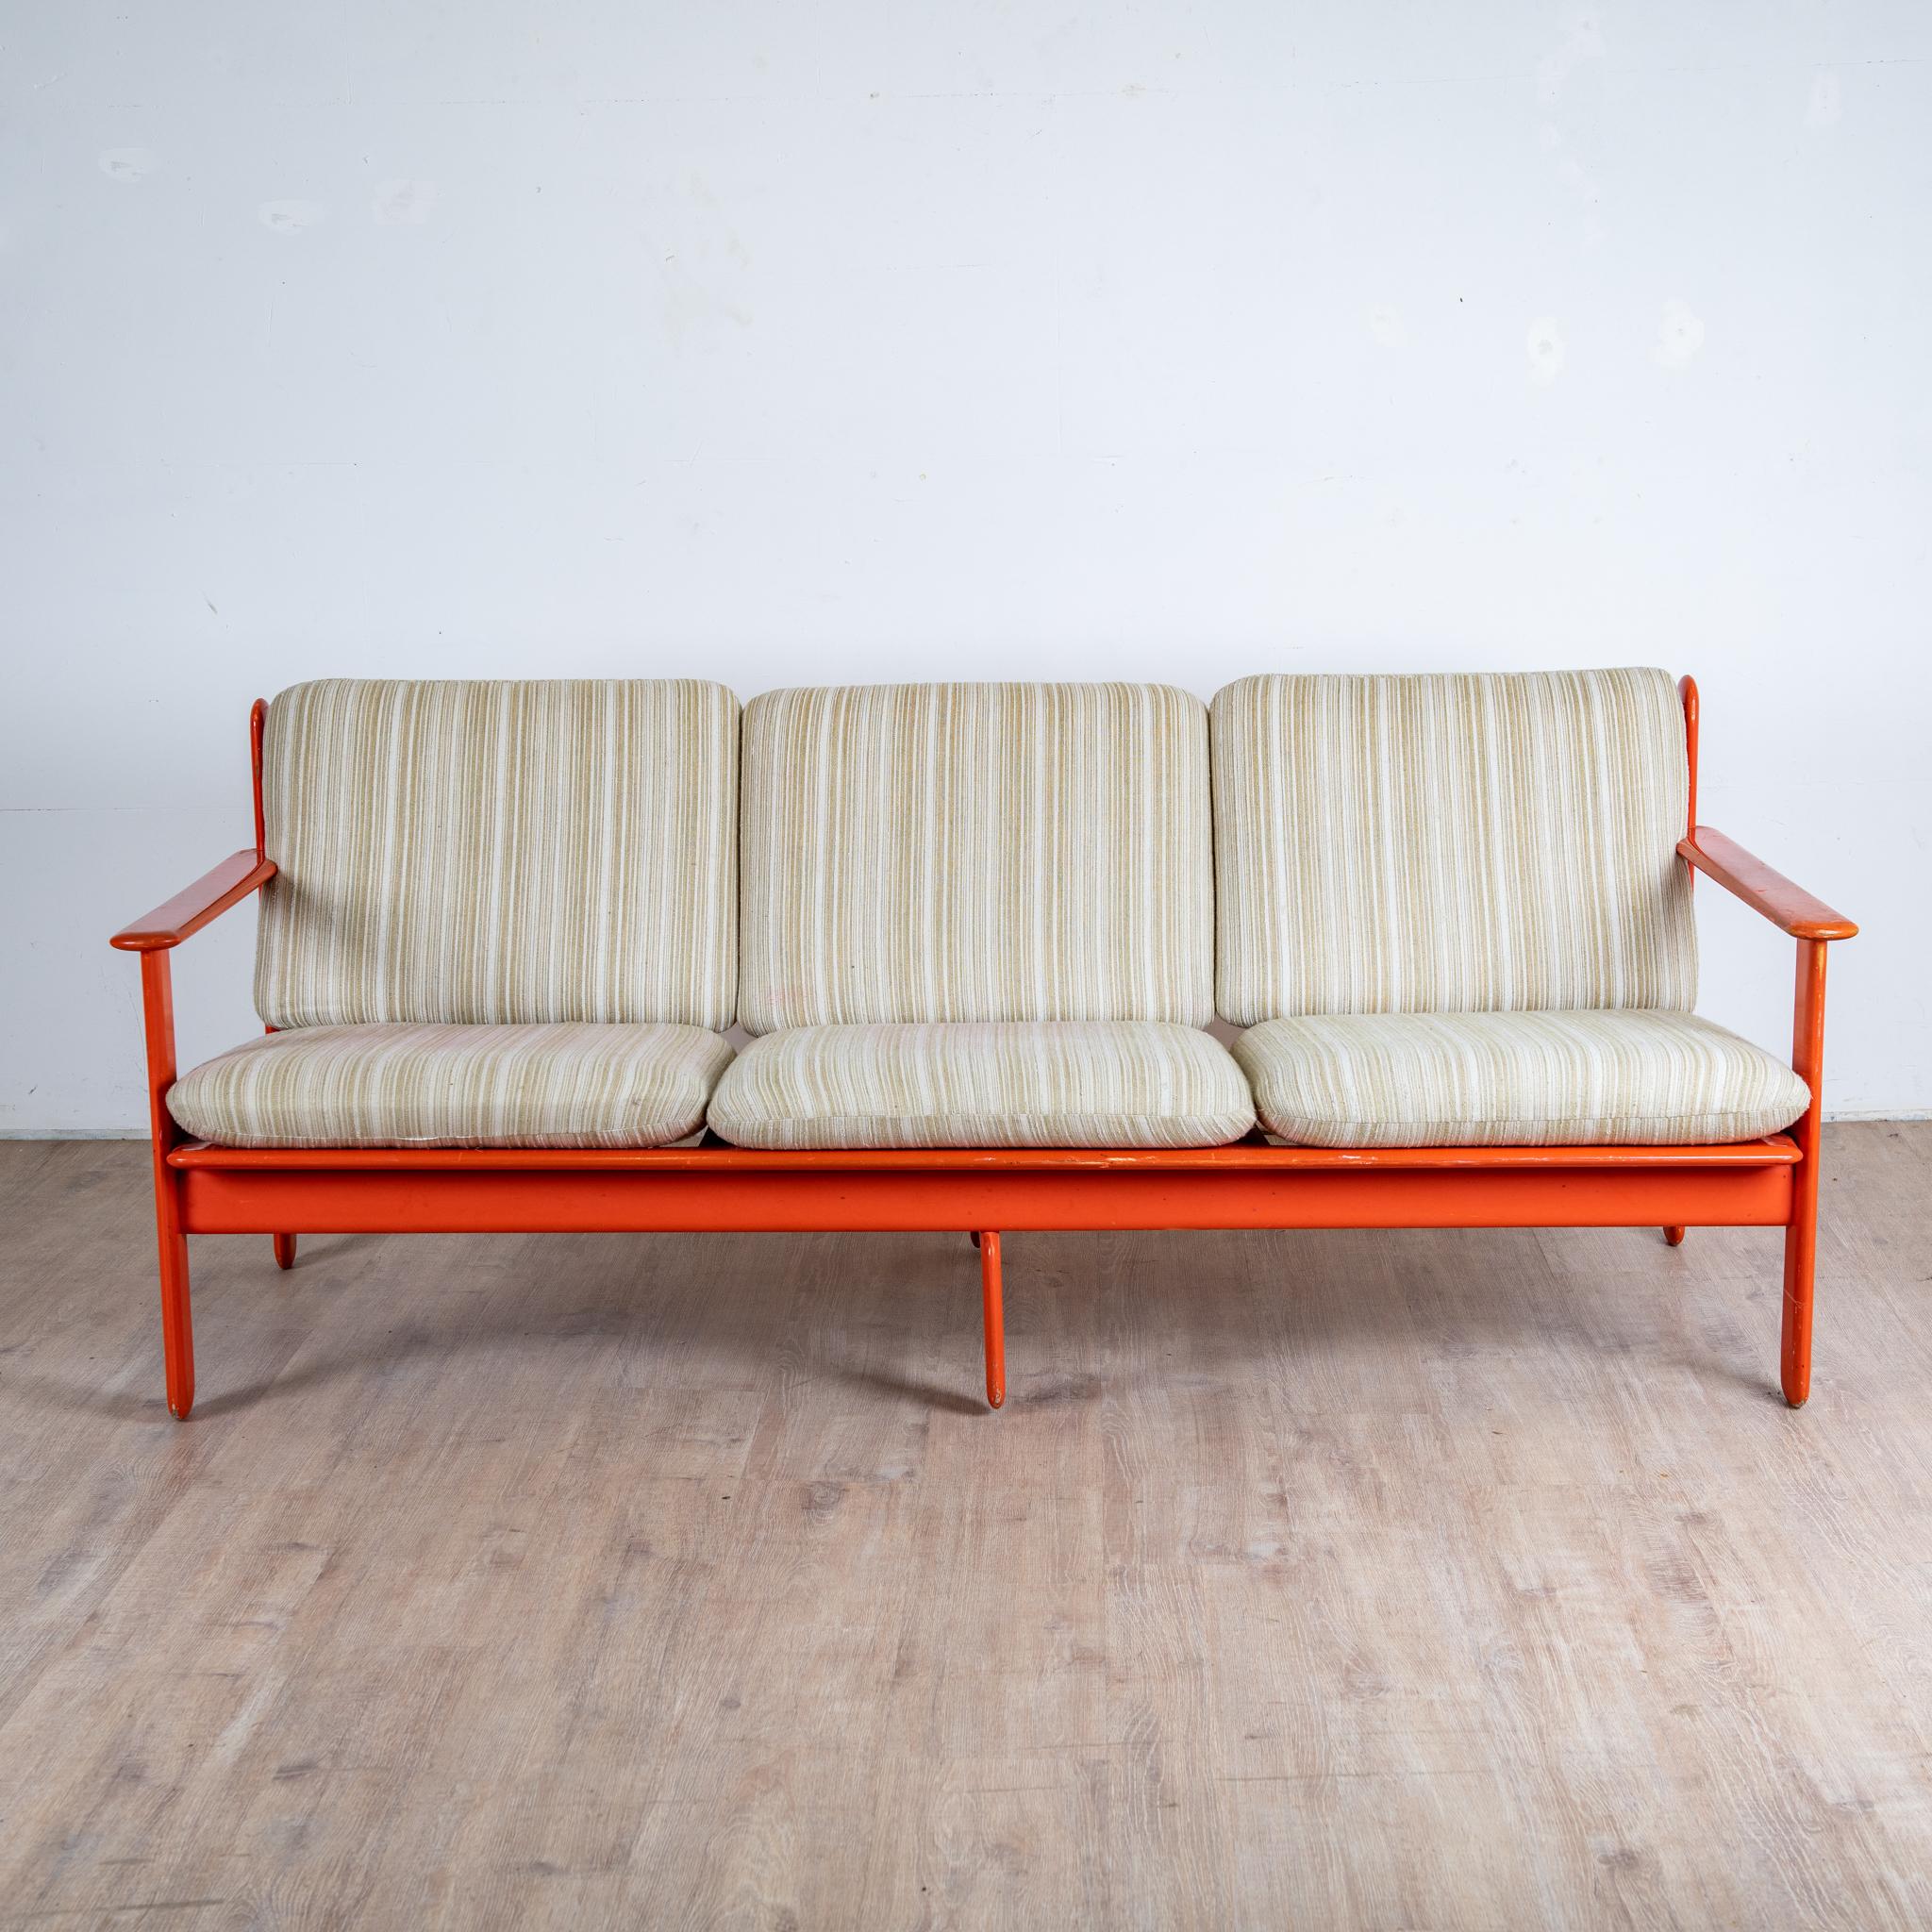 Canapé 3 places en bois laqué orange, fabriqué en Italie, 1970

structure de bois laqué rouge coussin d'assise en mousse coton d'origine.

hauteur 75 cm hauteur assise 40 cm longueur 190 profondeur 80 cm